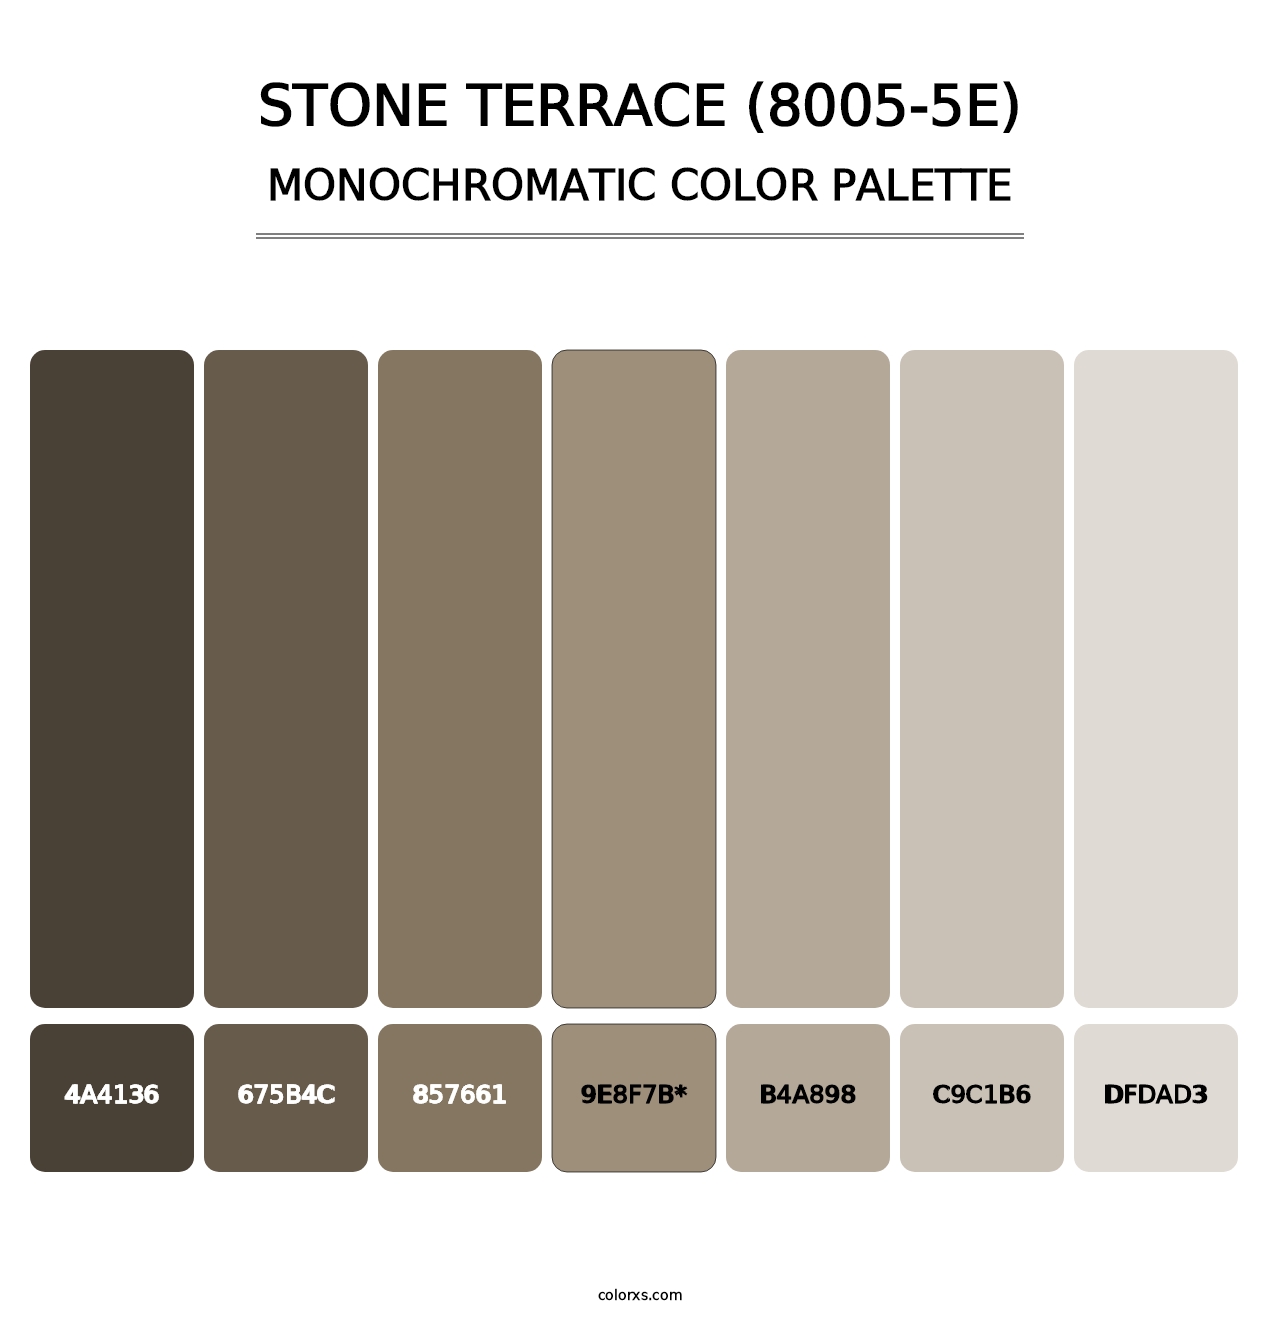 Stone Terrace (8005-5E) - Monochromatic Color Palette